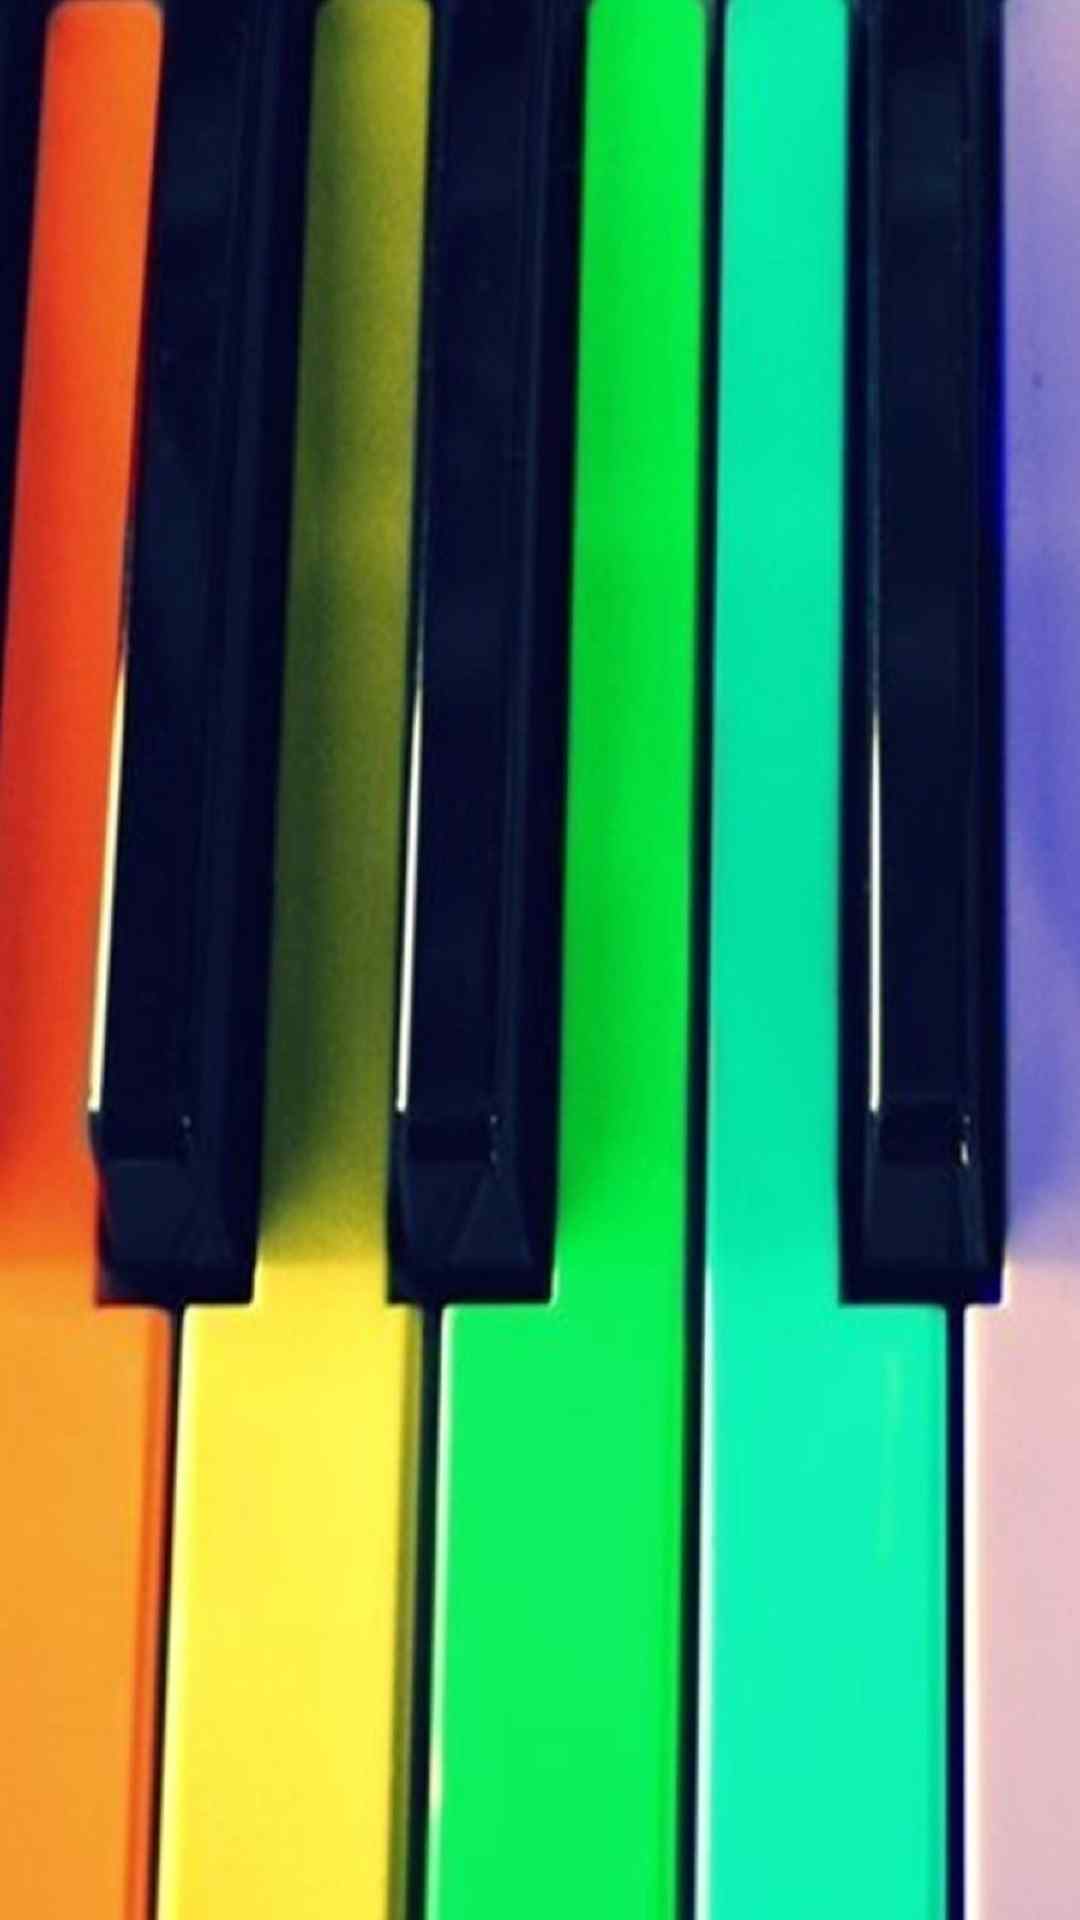 彩色钢琴键创意手机壁纸